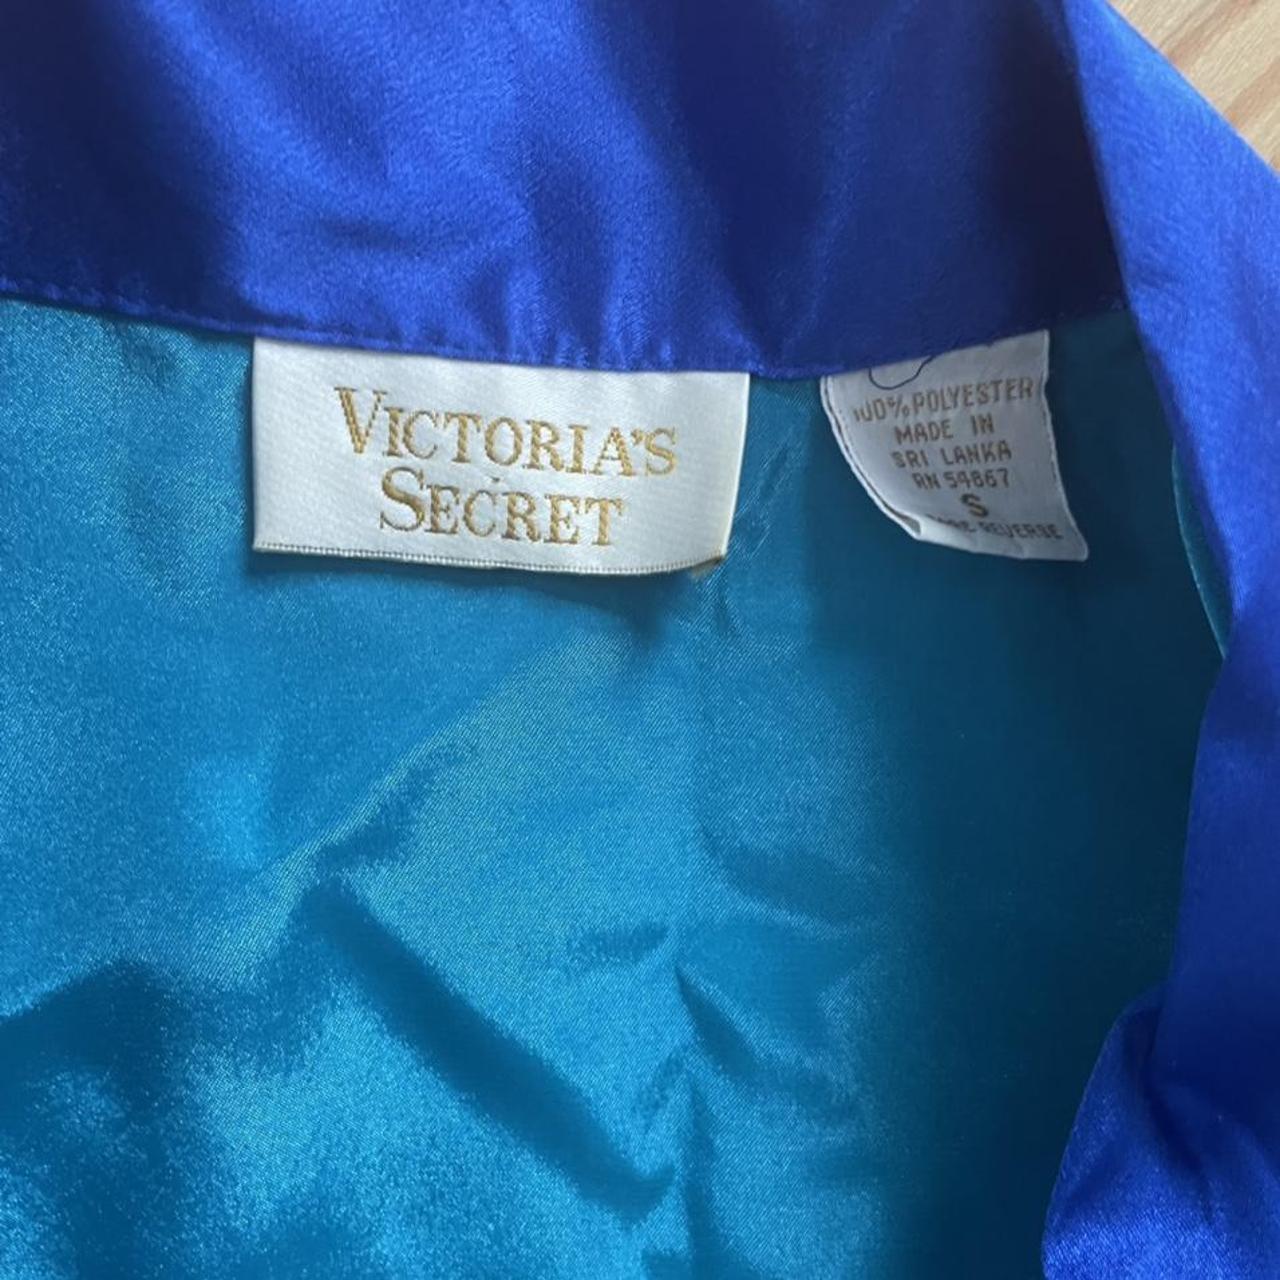 💙 Victoria Secret Gold Label Set 💙 STUNNING vintage - Depop